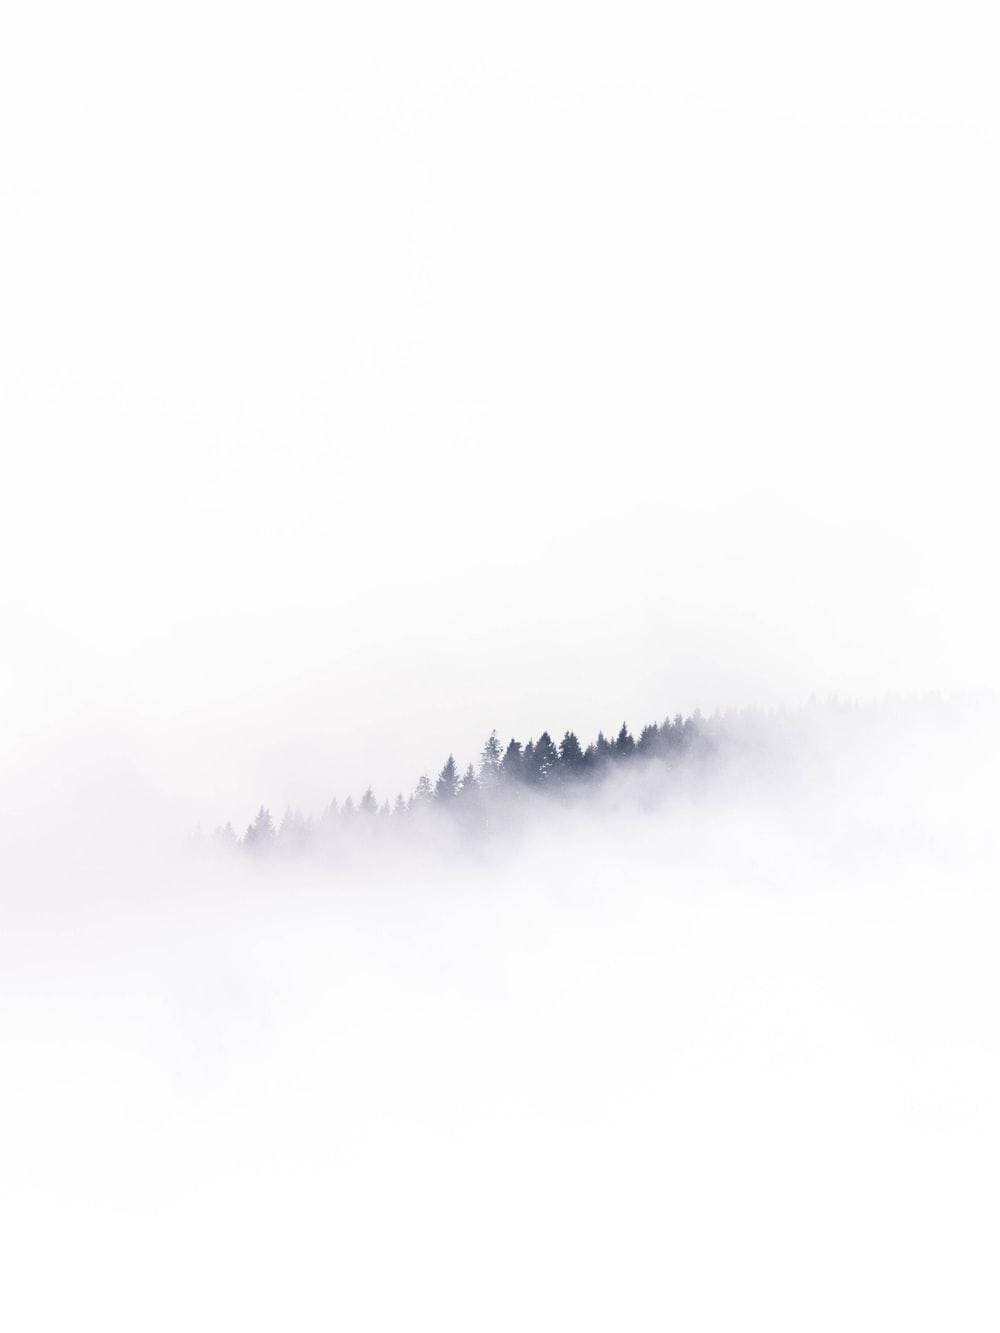 Smokey White Color Mountain Background